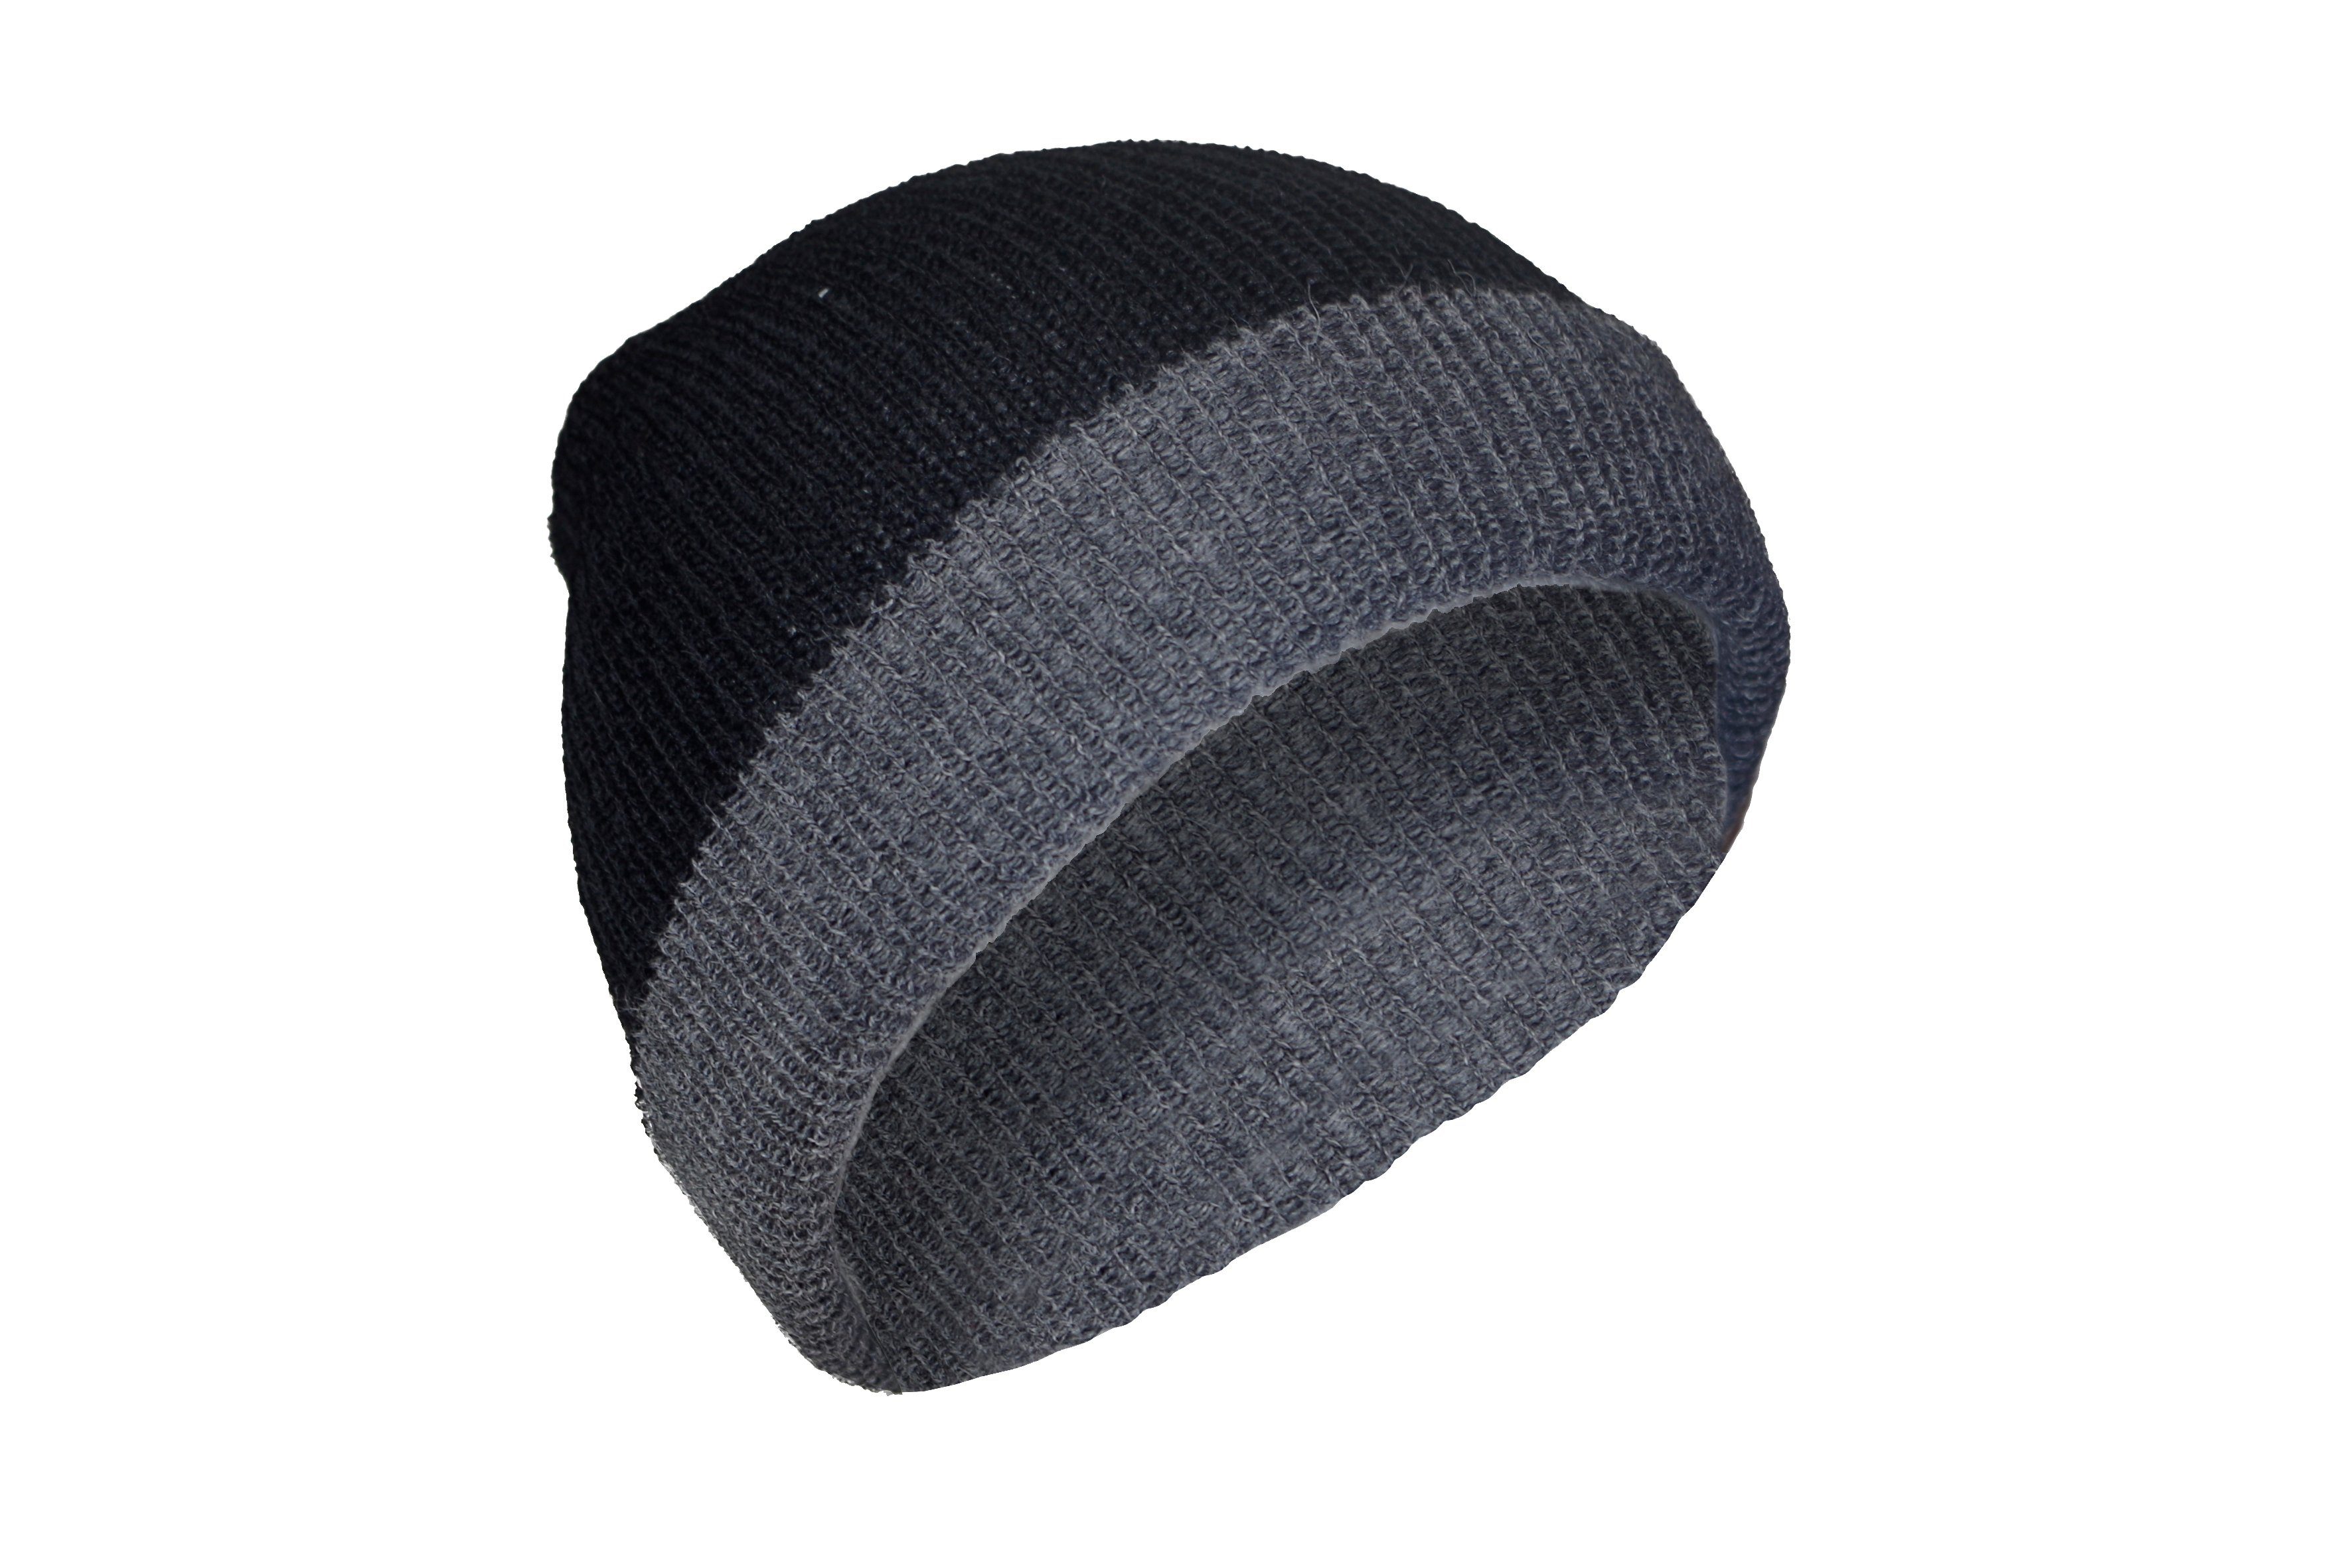 Posh Gear grau 100% Mütze schwarz aus Rettolana Alpakawolle Alpaka Strickmütze 